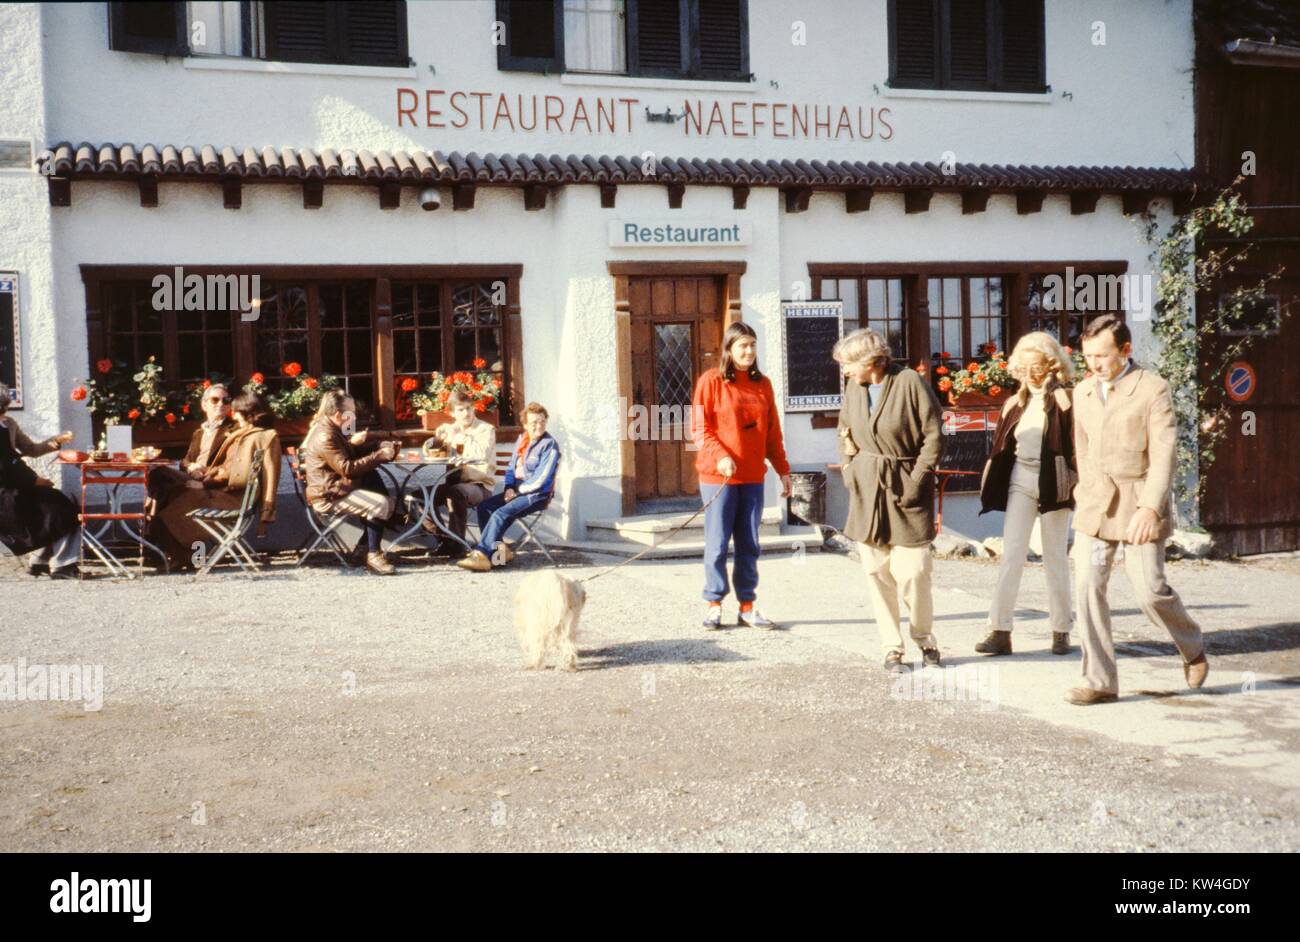 Eine Frau trägt eine rote Jacke Spaziergänge mit ihrem Hund als Touristen  vorbei Diners außerhalb des Restaurants Naefenhaus in Stallikon, Schweiz,  1975 Essen Stockfotografie - Alamy